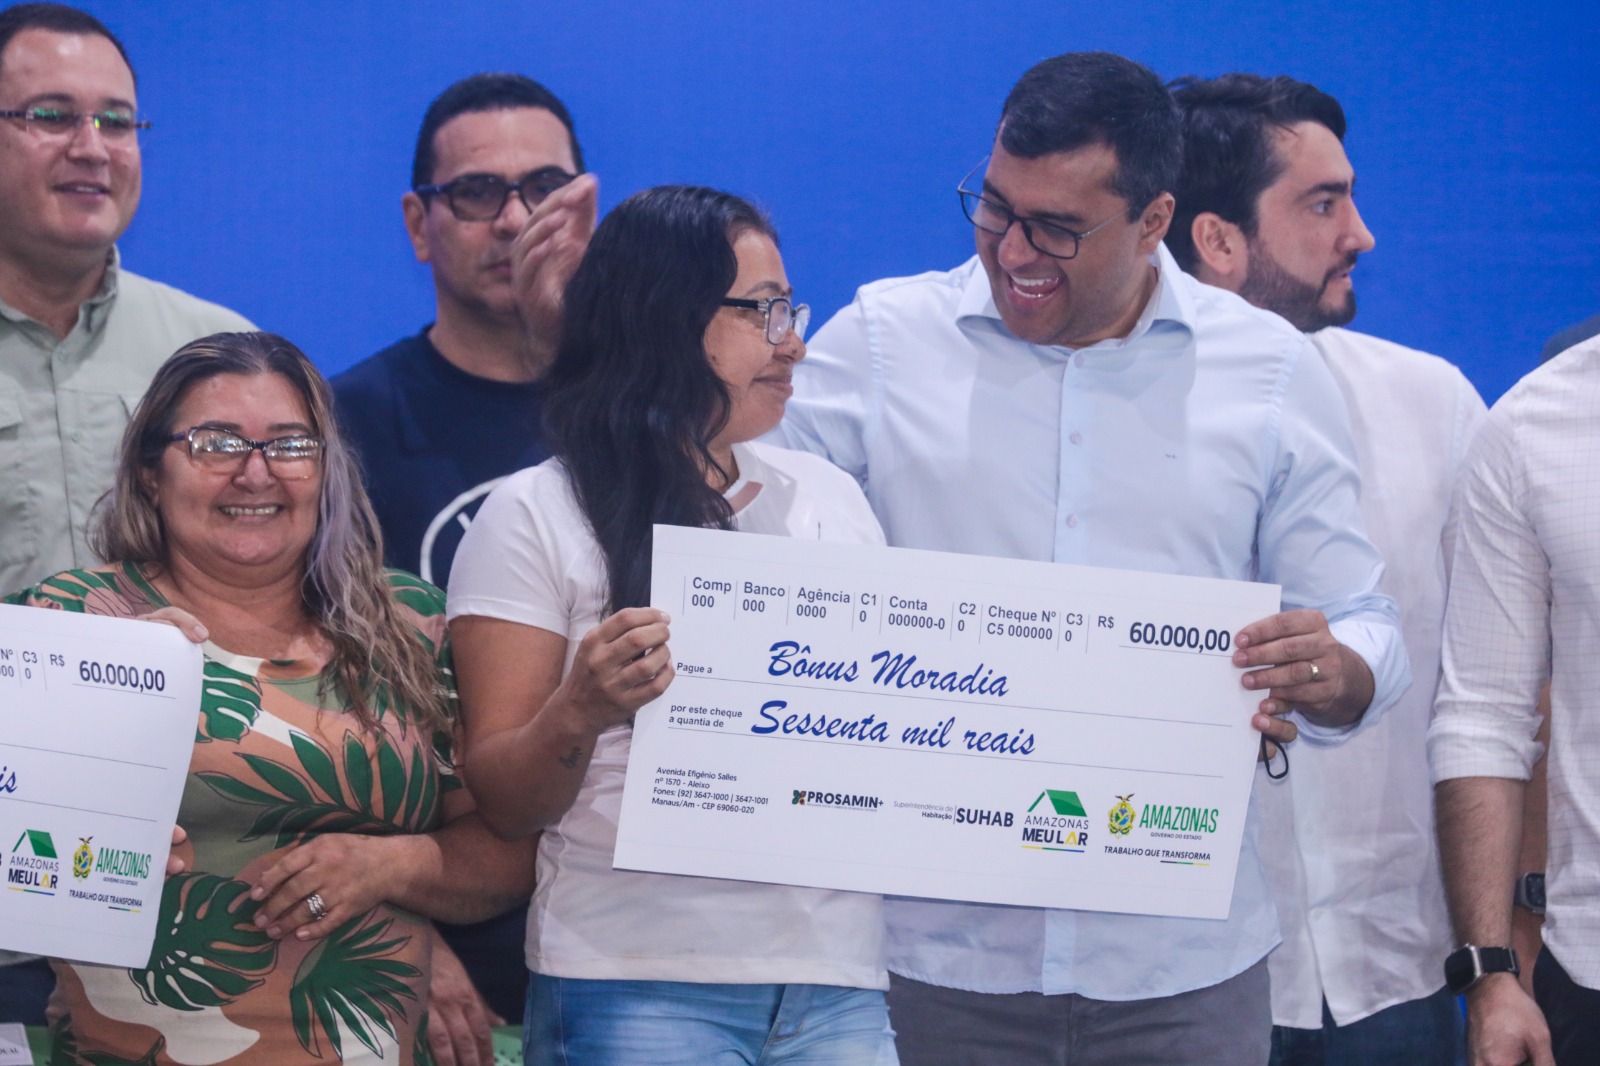 Com o novo pagamento de soluções de moradia, Governo do Amazonas alcança 594 famílias reassentadas pelo Prosamin+